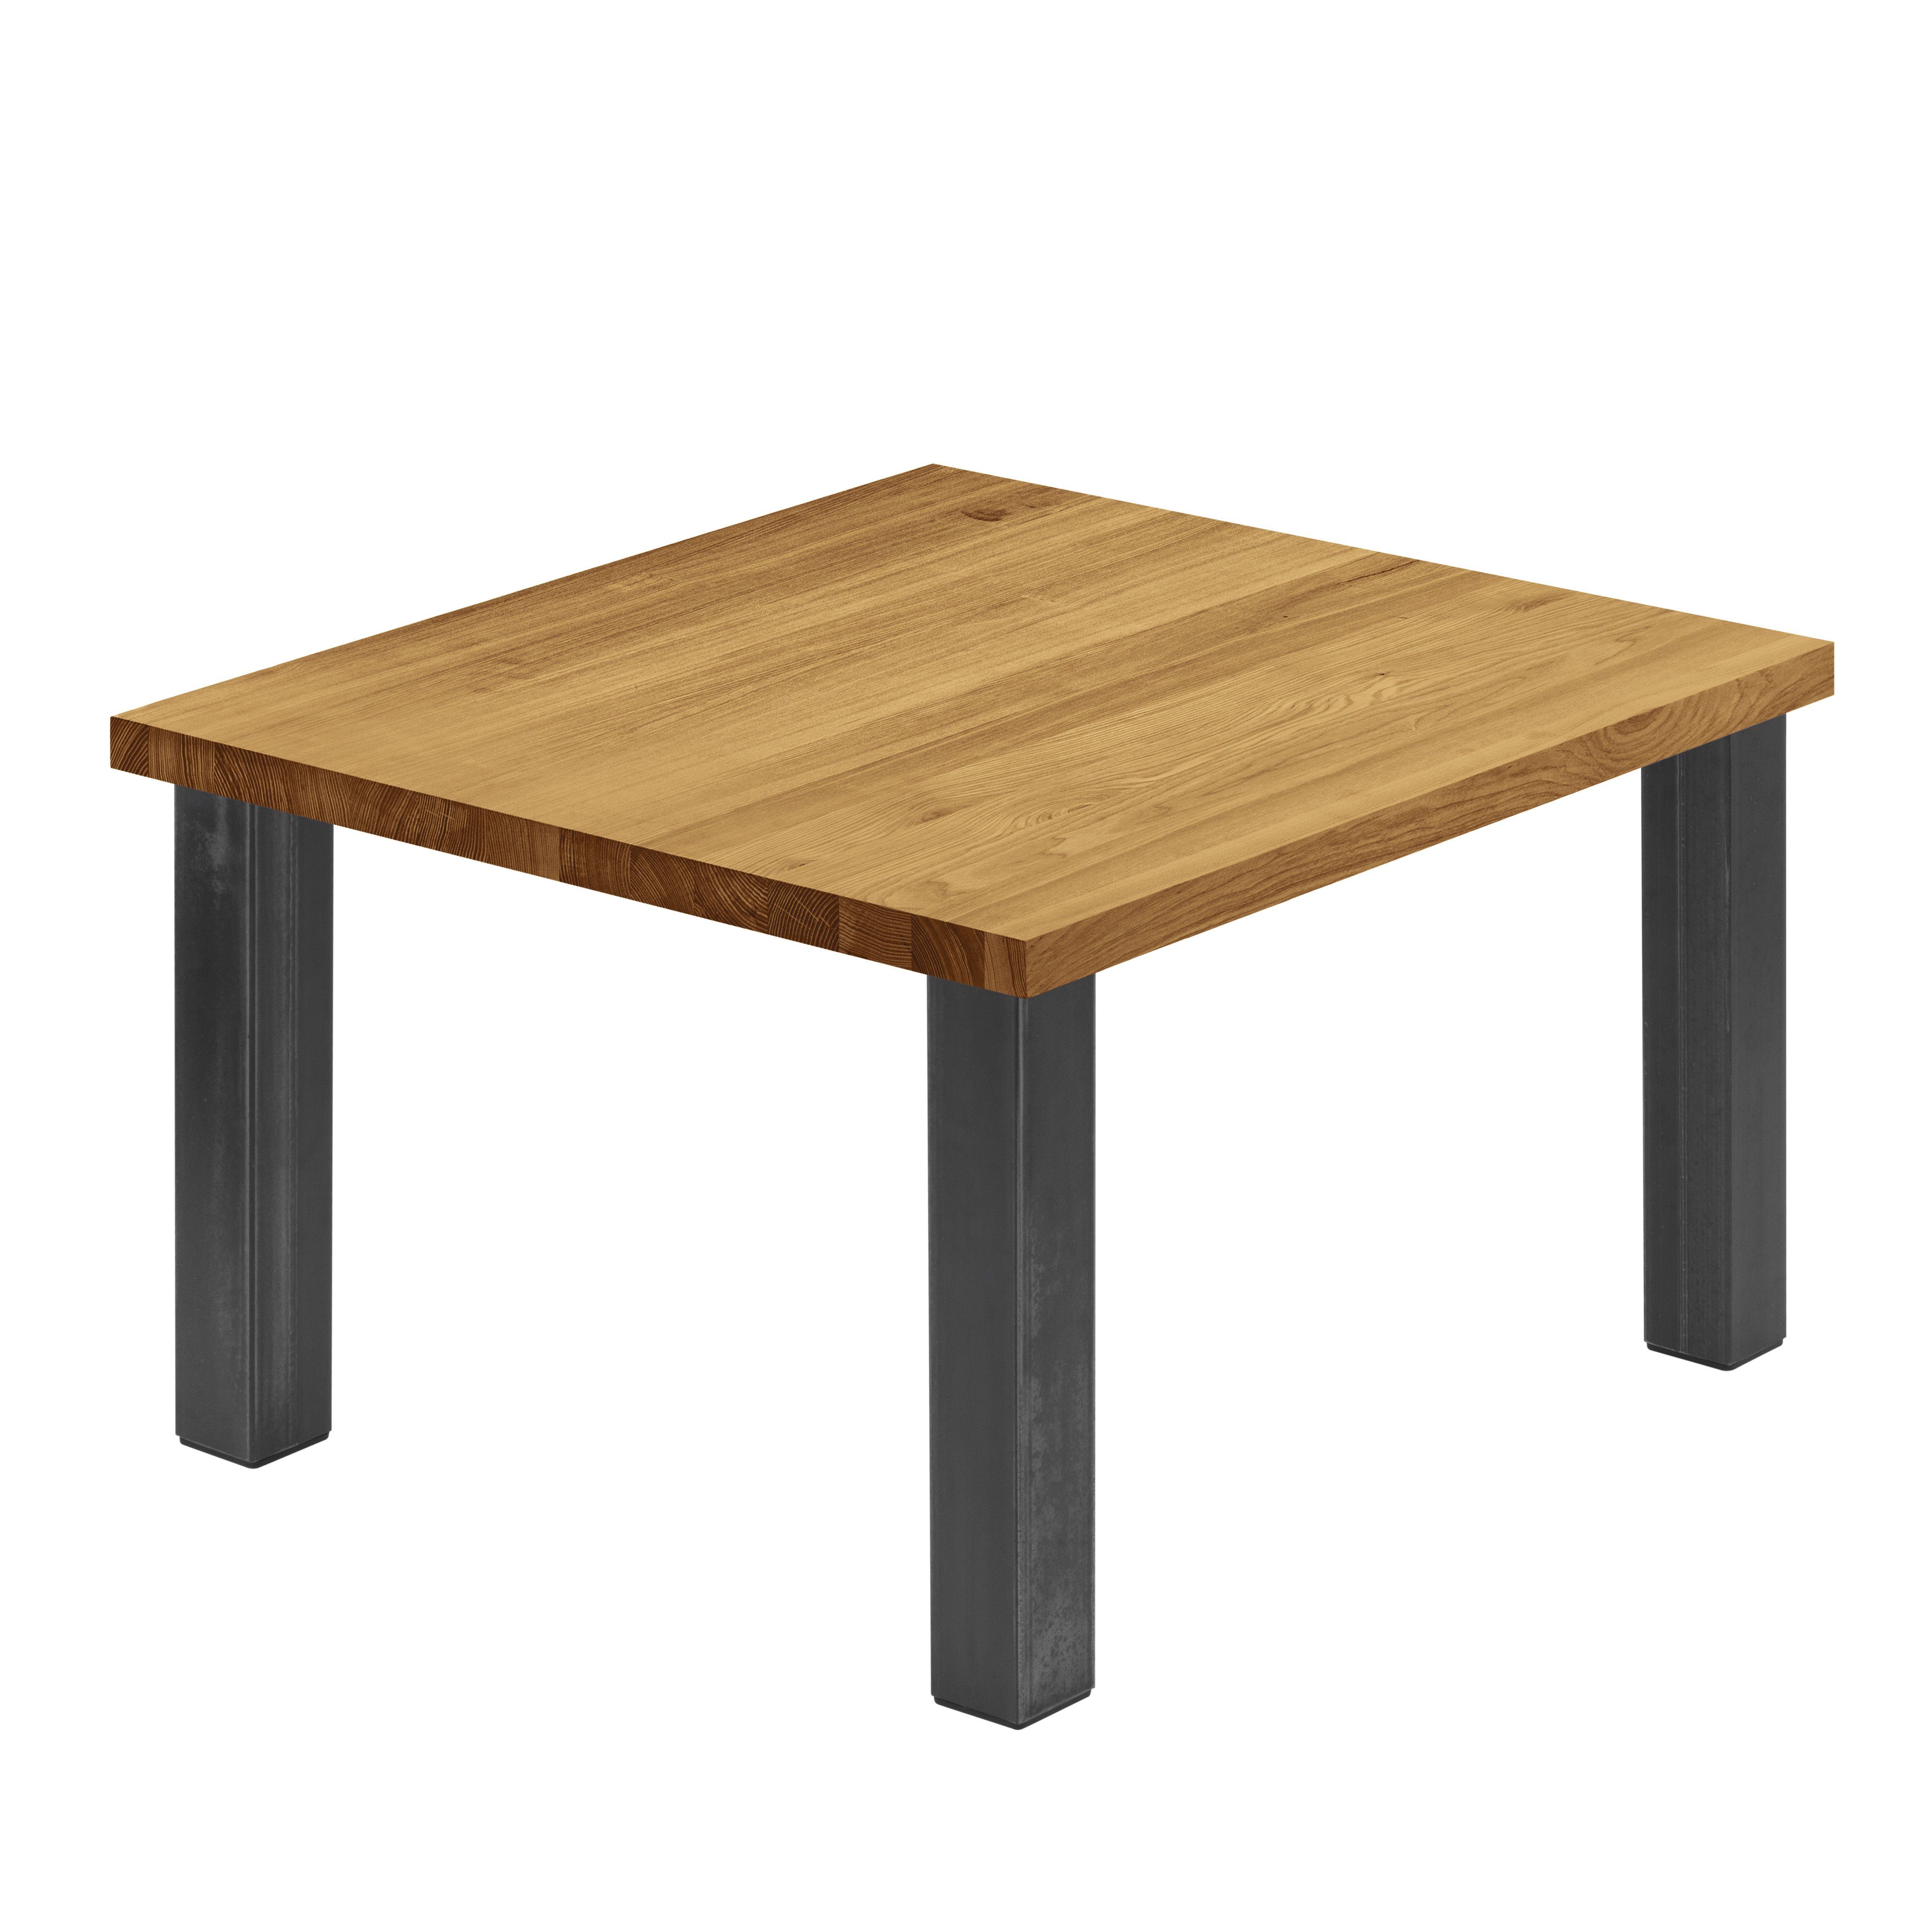 LAMO Manufaktur Rustikal Kante inkl. | Metallgestell Esstisch gerade Tischplatte Classic Massivholz (1 Küchentisch Tisch), Rohstahl Klarlack mit